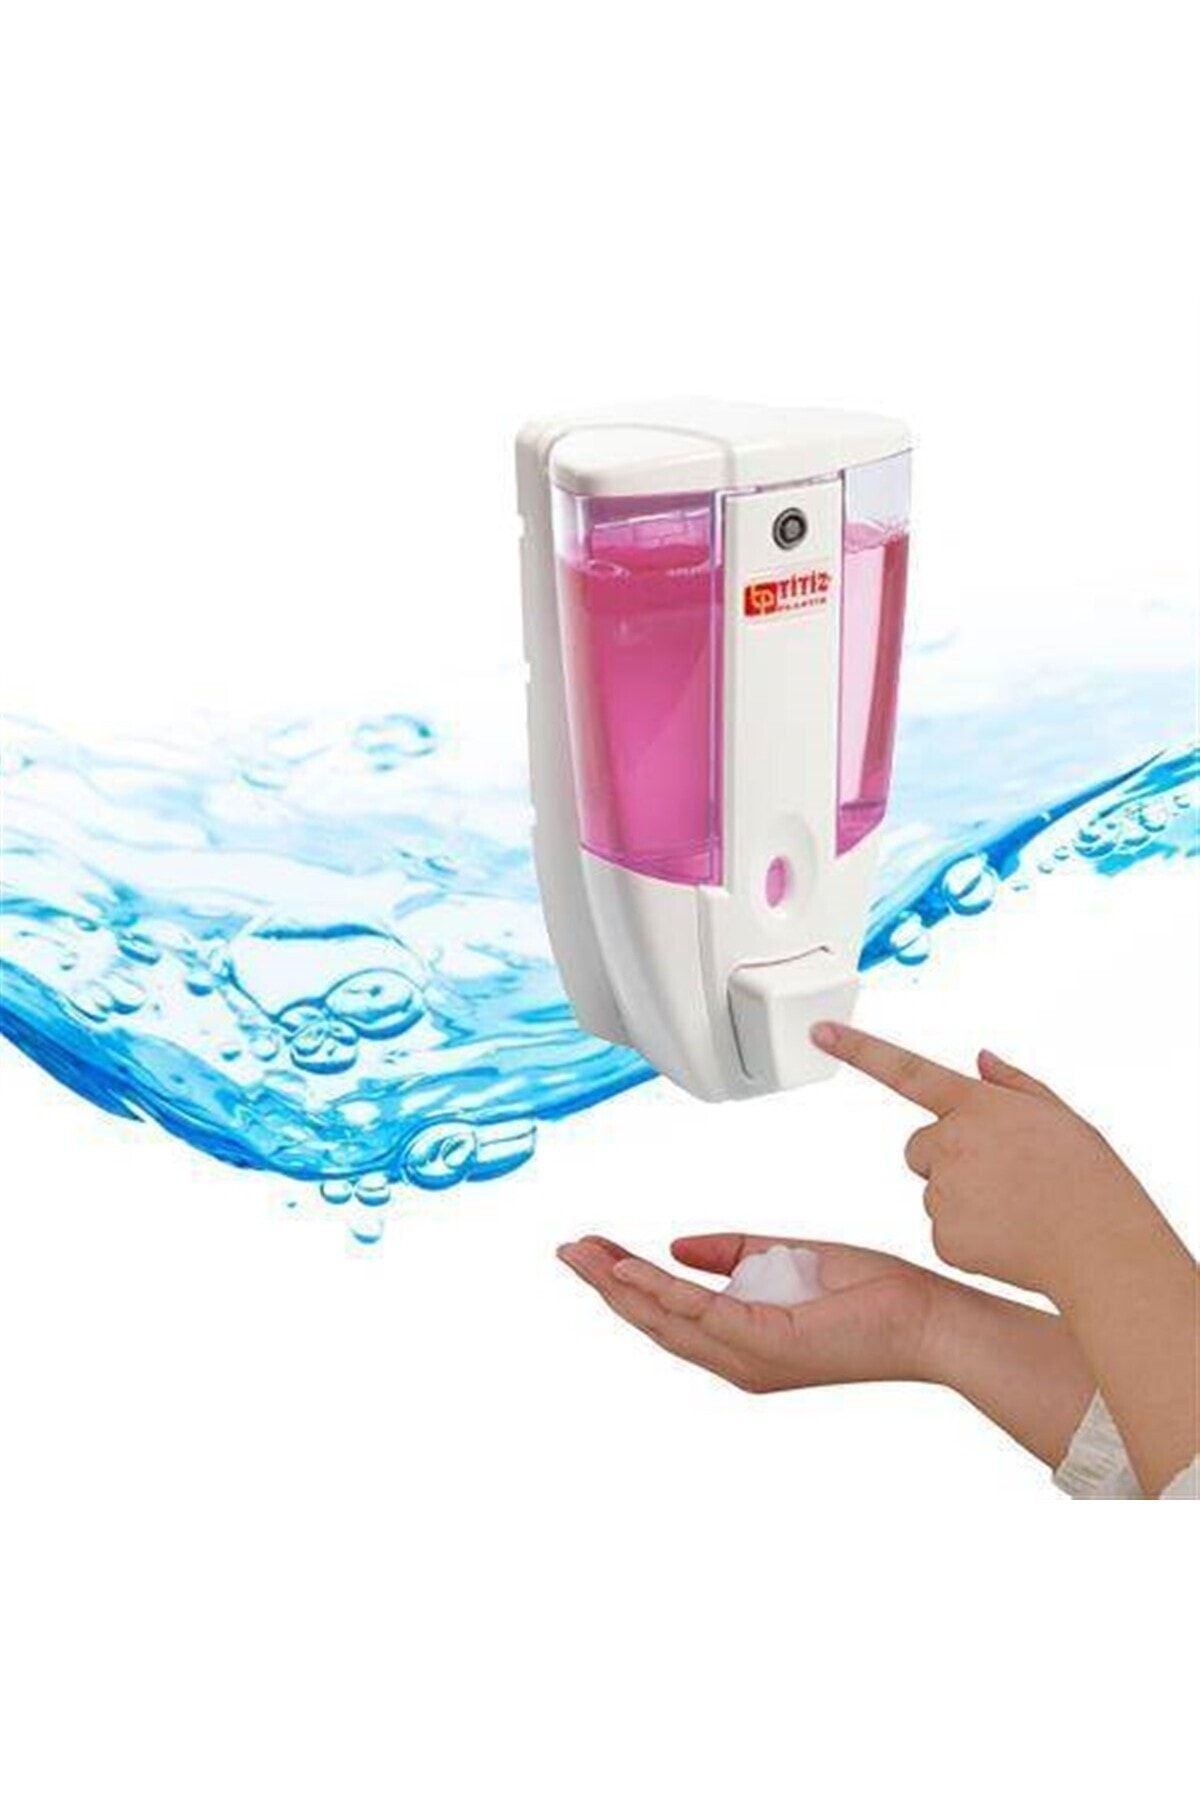 YFHOME 2 Adet Titiz Duvara Monteli Sıvı Sabun Şampuan Makinesi 450 Ml